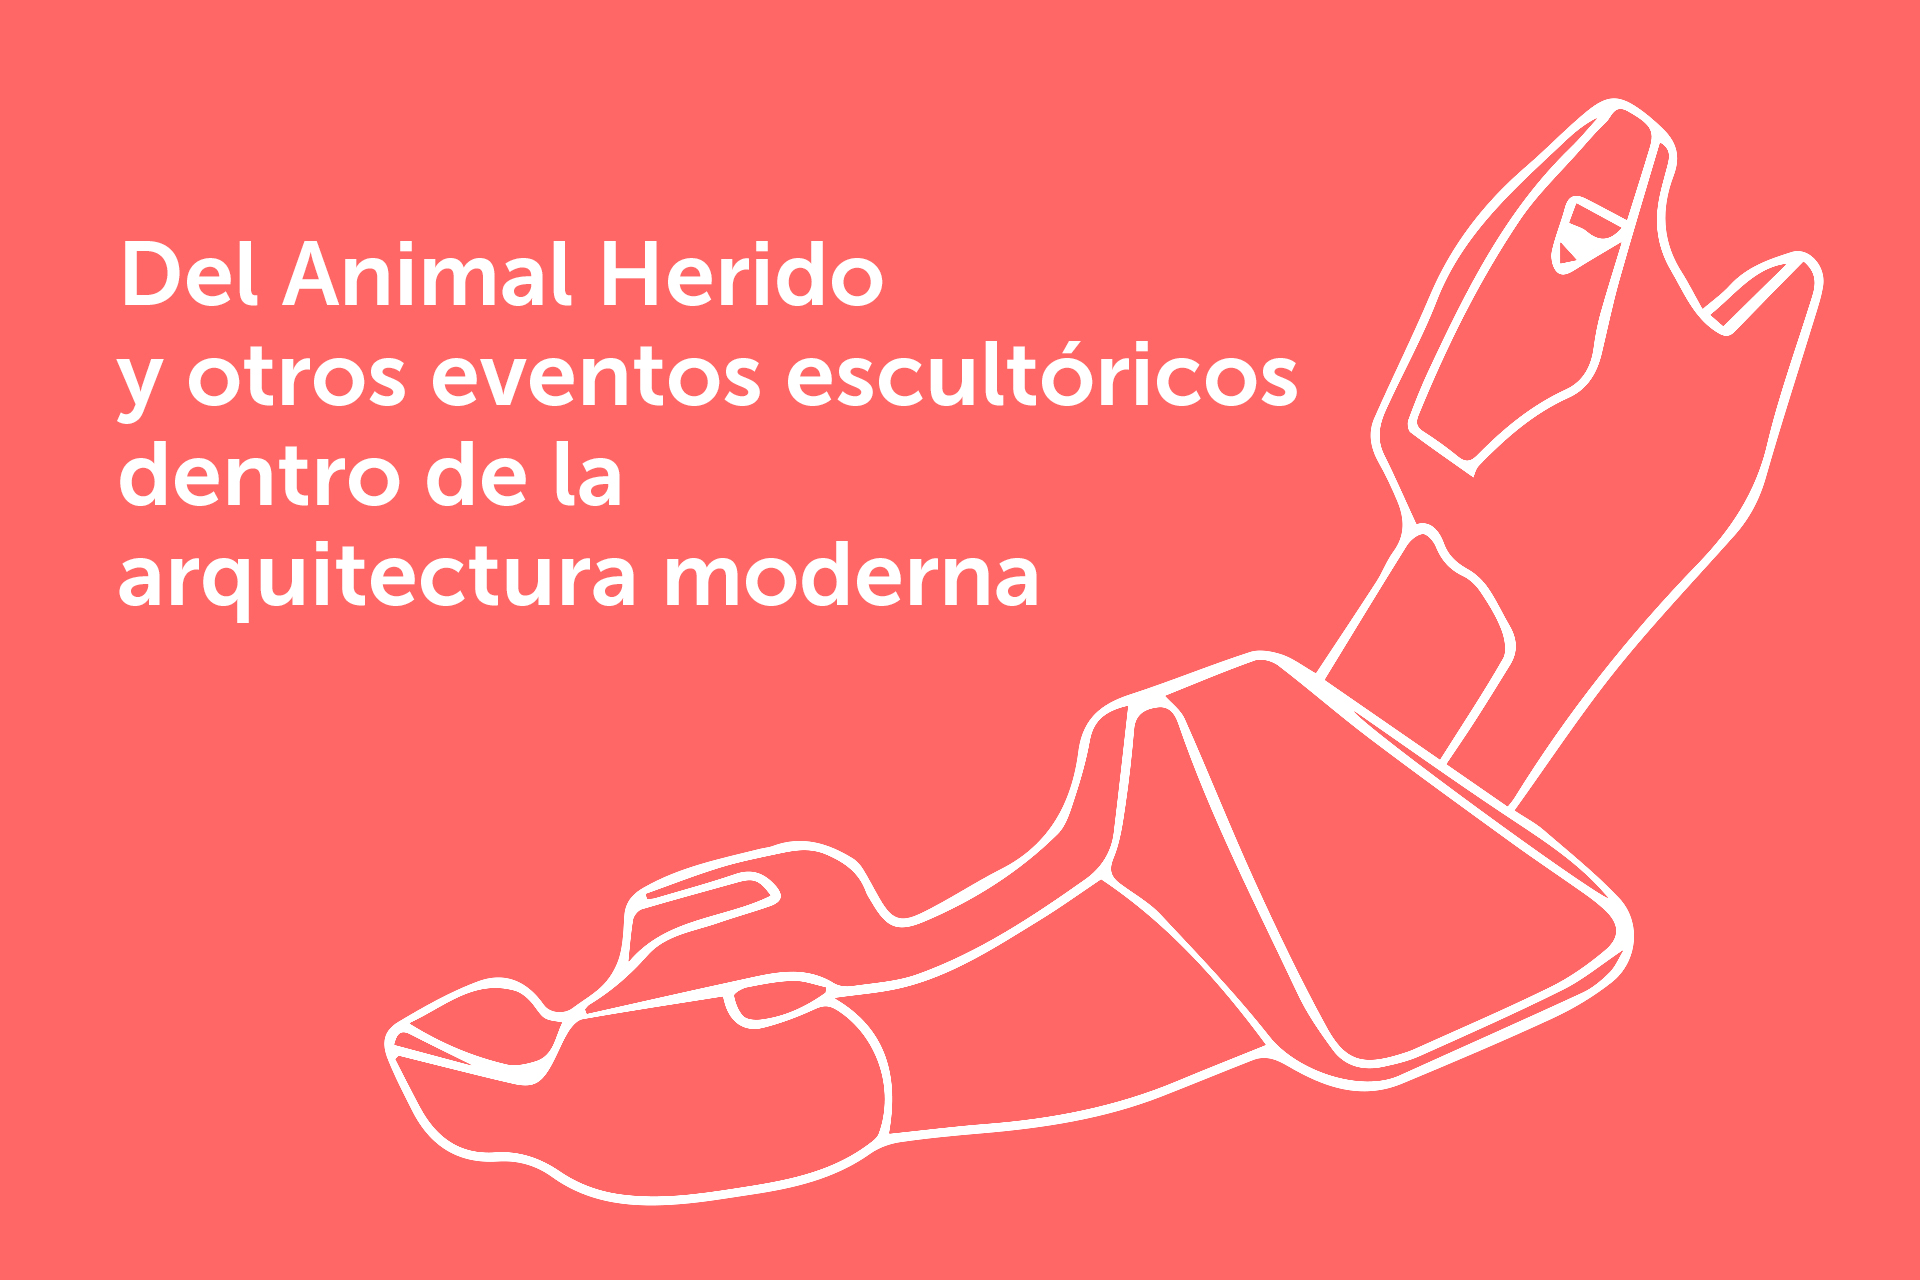 Del Animal Herido y otros eventos escultóricos dentro de la arquitectura moderna